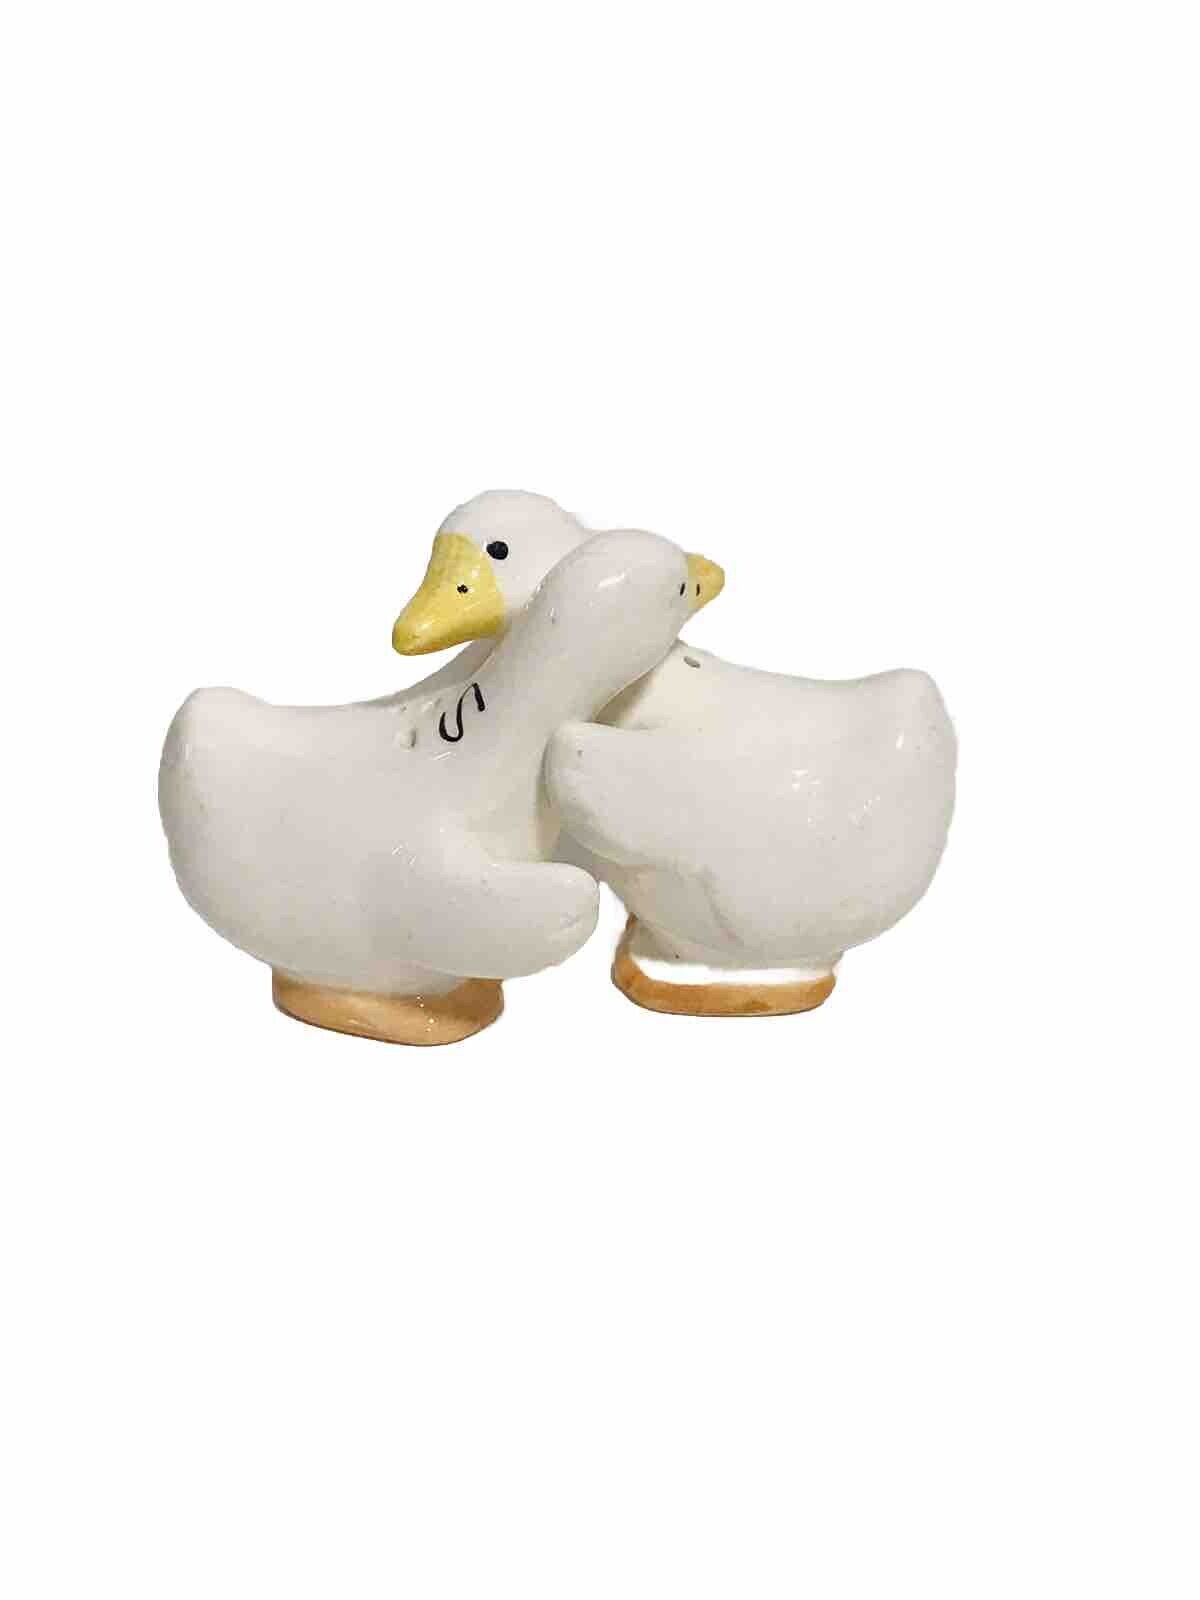 Vintage Hugging Geese Ducks Ceramic Salt & Pepper Shakers Set